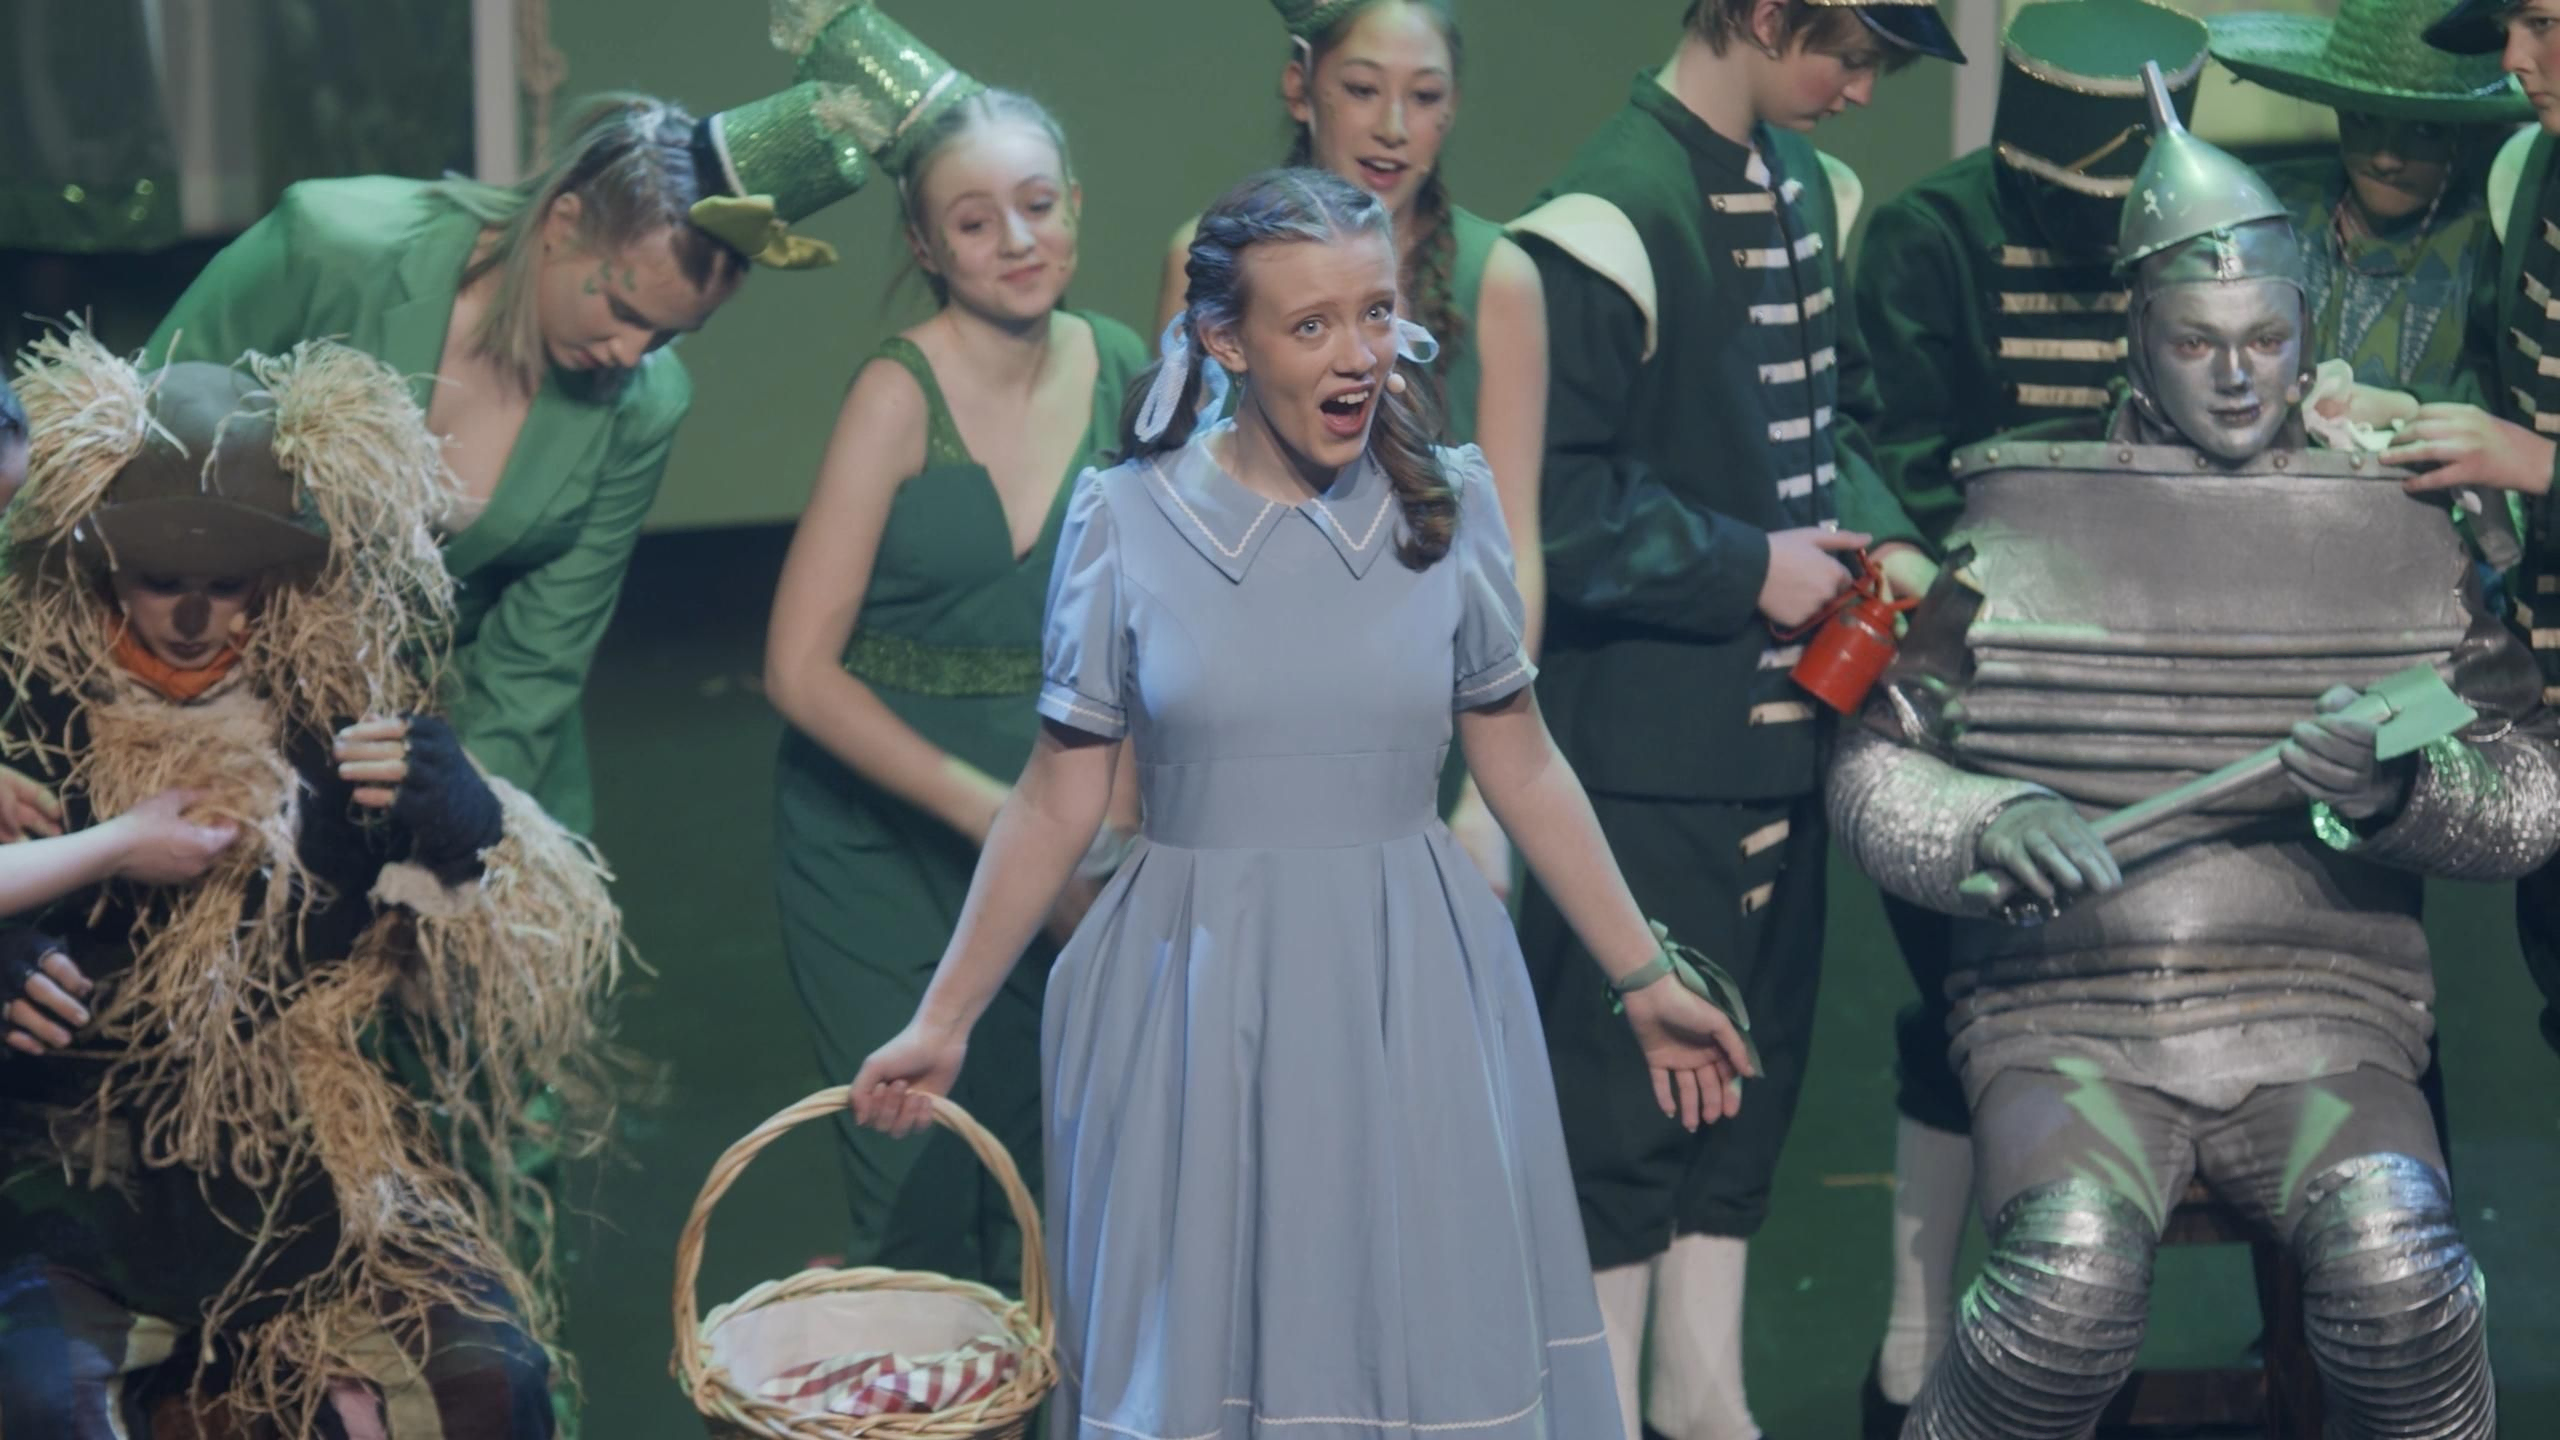 Fugleskremselet, Dorothy og Blikktømmerhoggeren omringet av folk i grønne kostymer